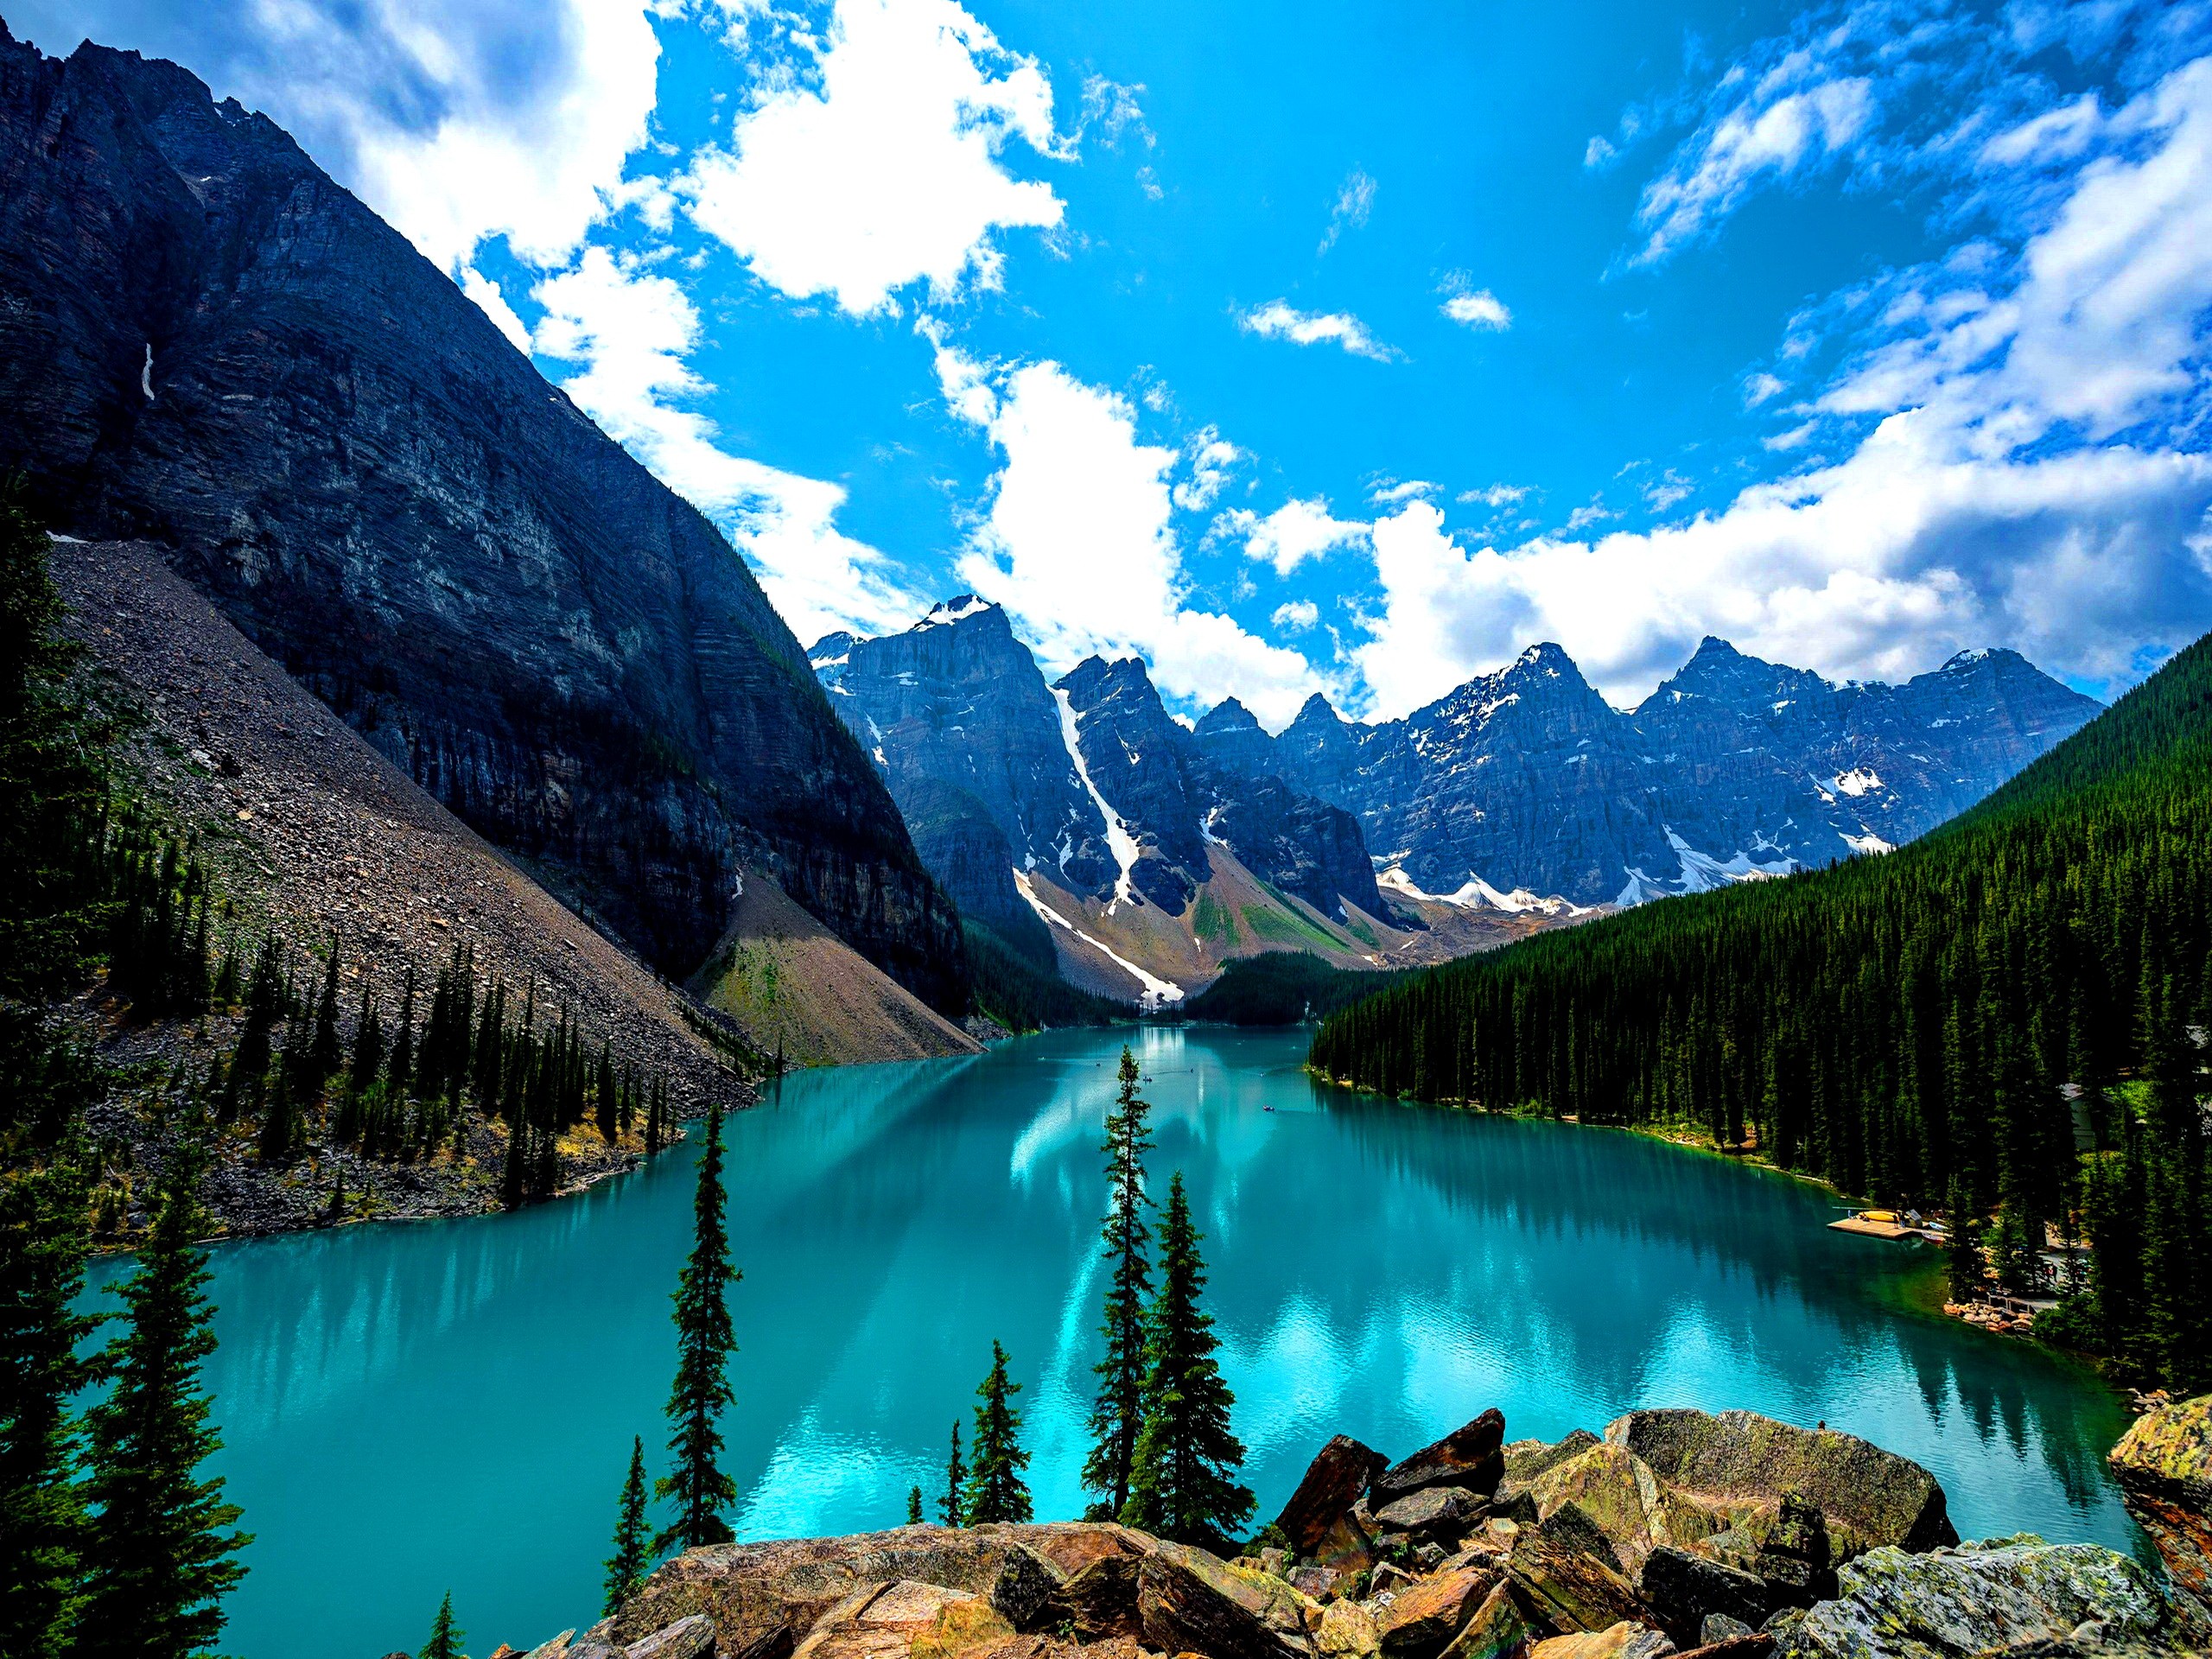 kanada wallpaper hd,natürliche landschaft,natur,berg,gewässer,gletschersee